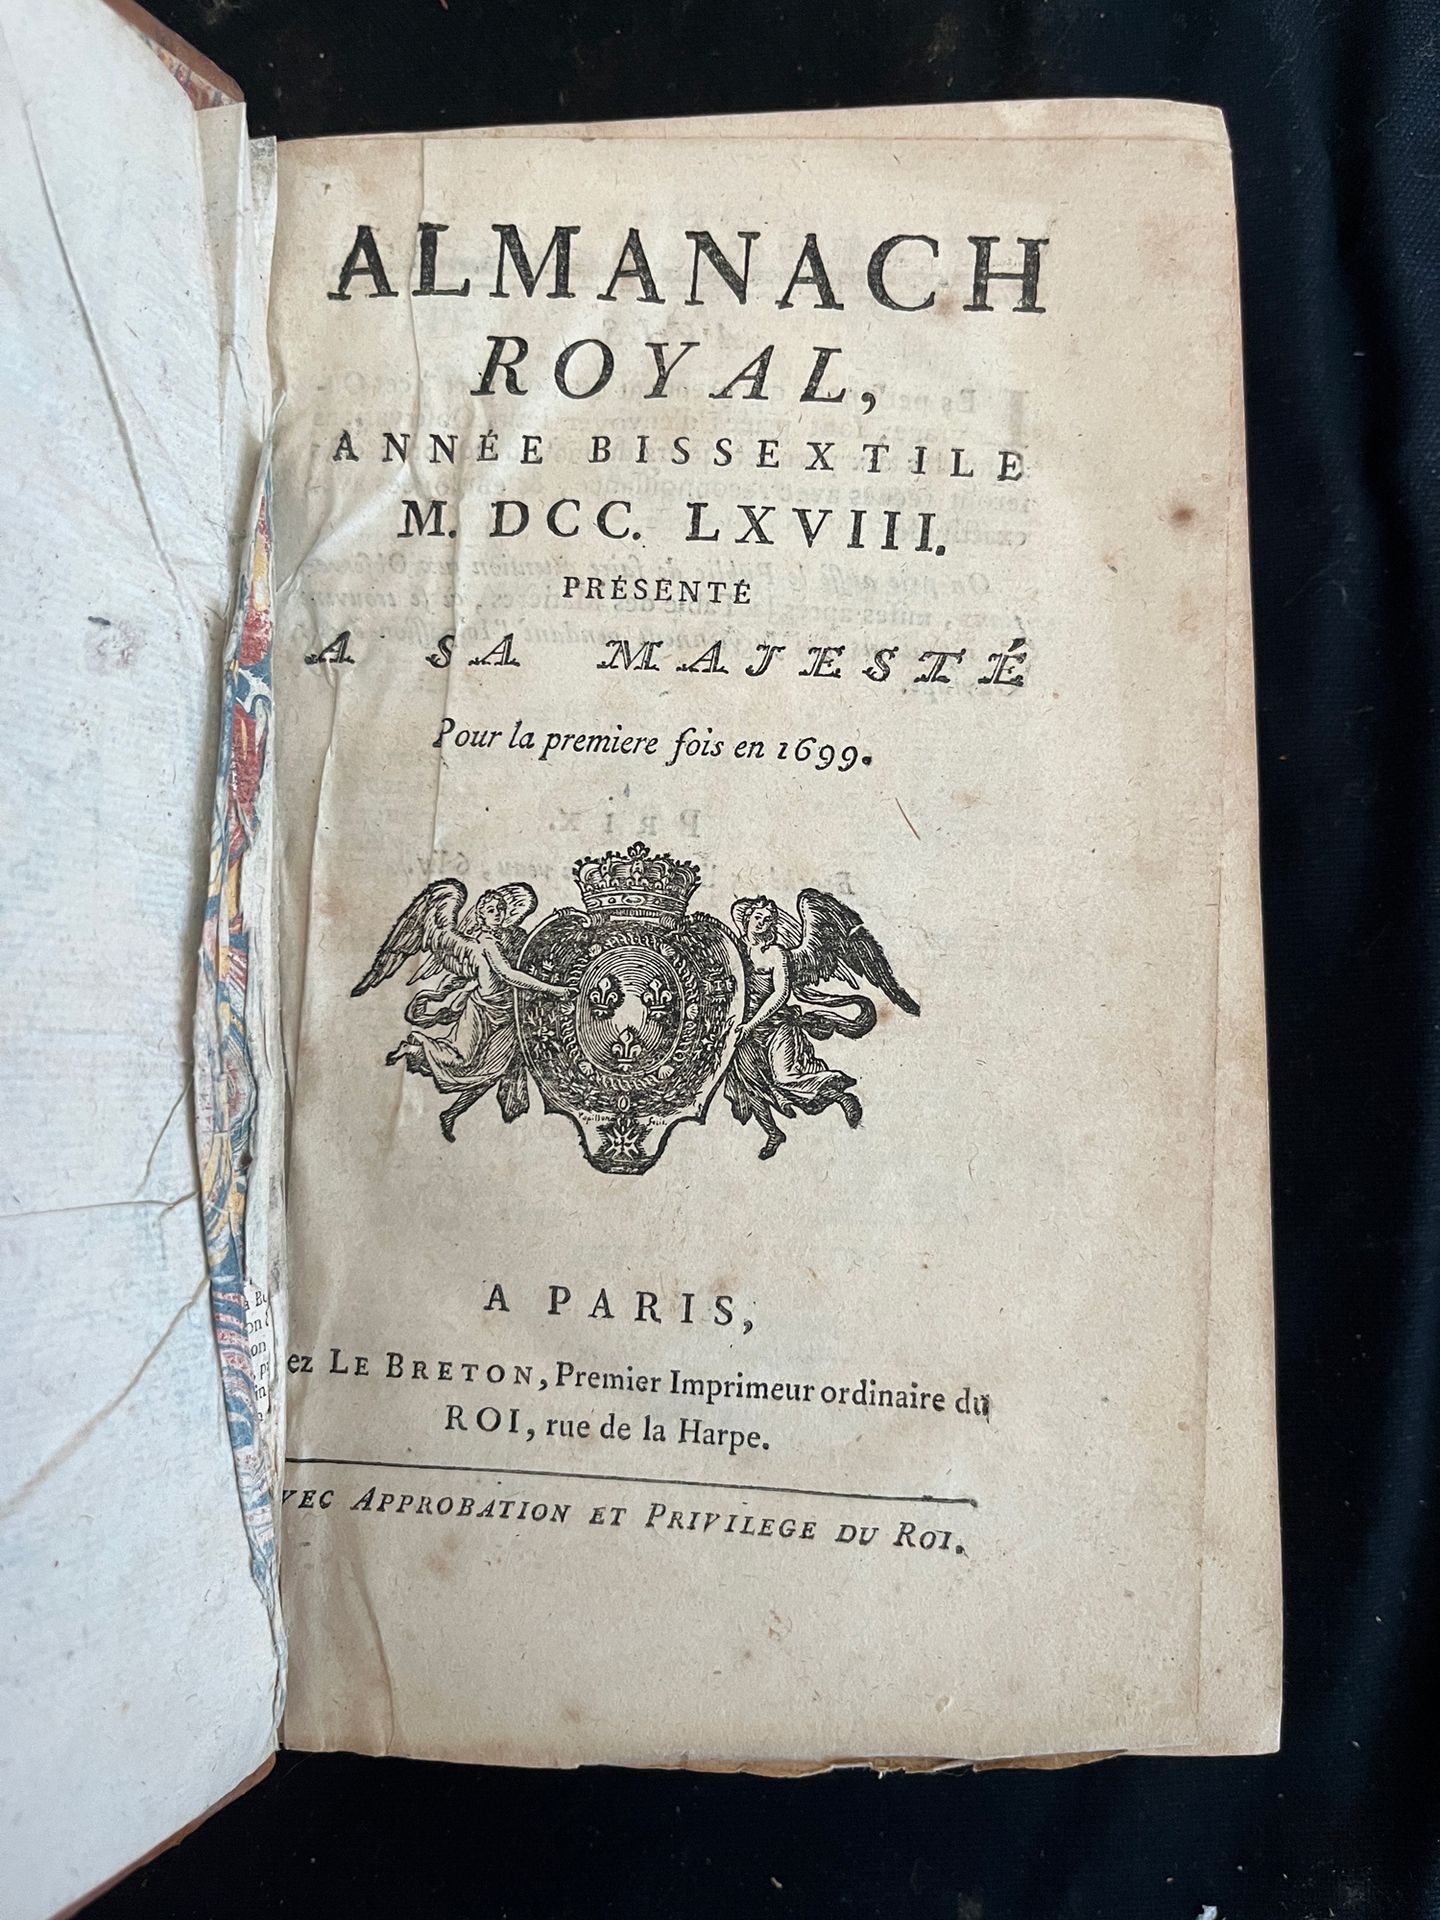 Null [ALMANACH]
Almanach royal pour l'an bissextile MDCCLXVIII. Paris, chez Le b&hellip;